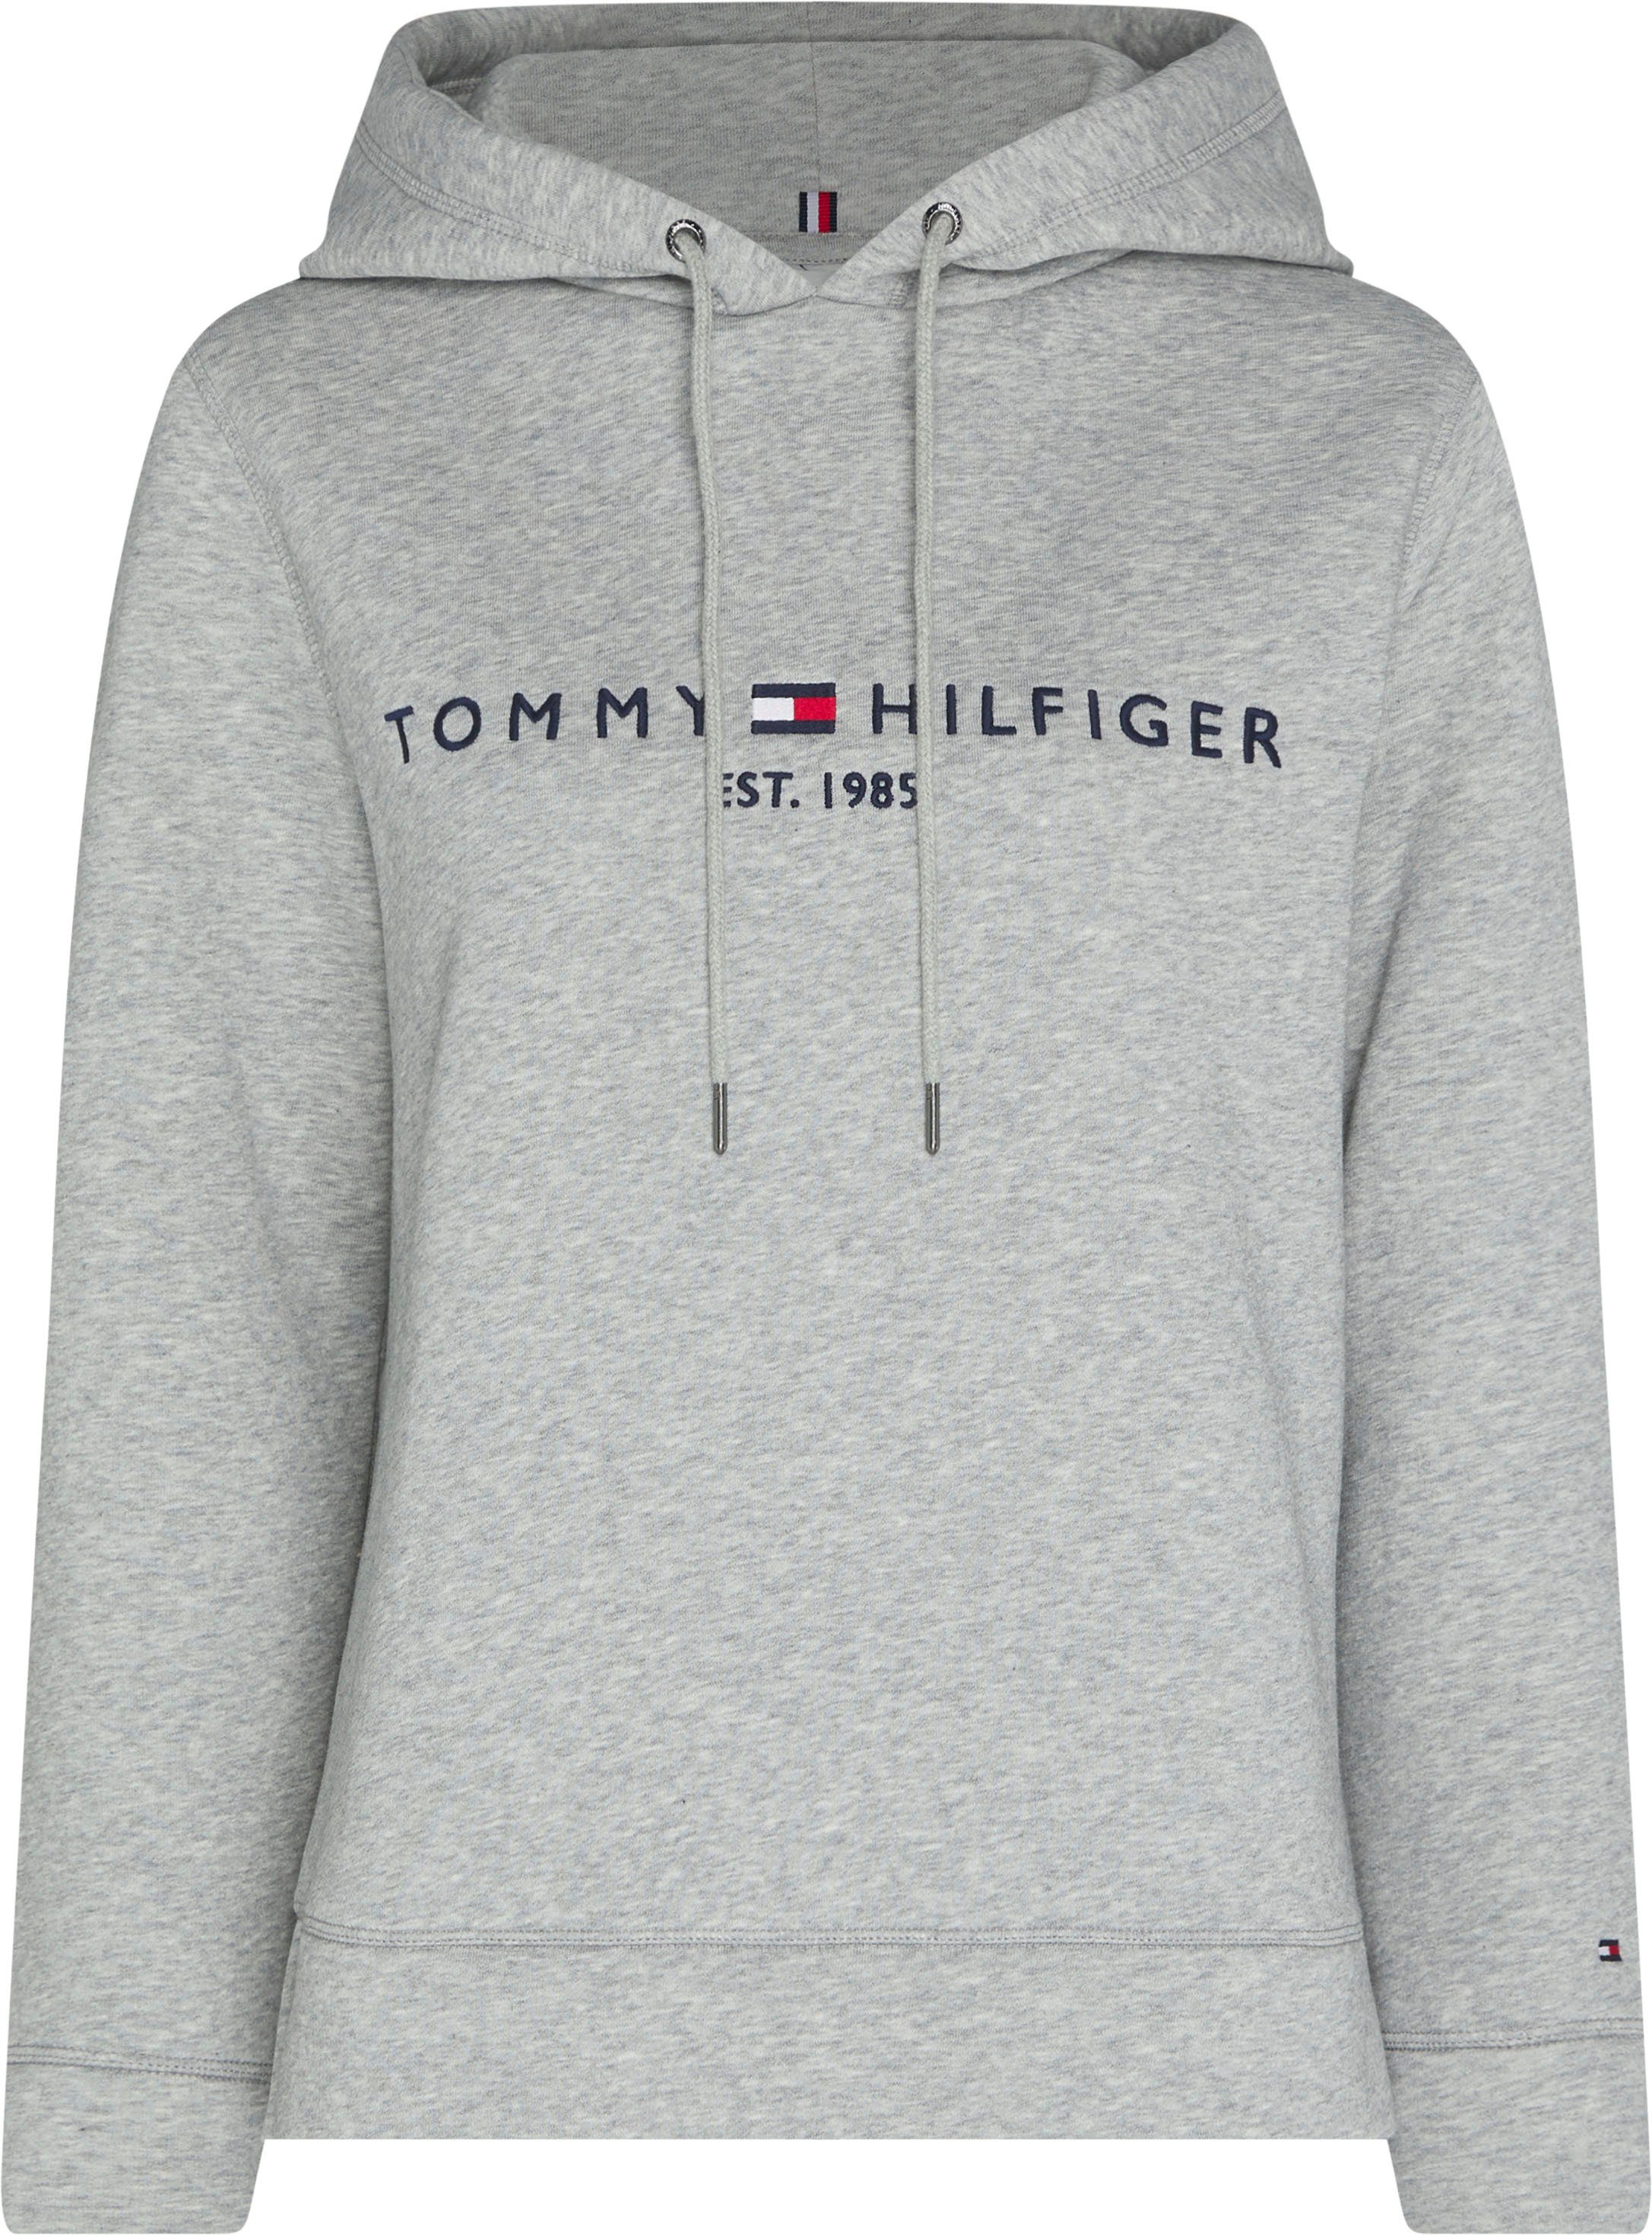 Graue Tommy Hilfiger Pullover für Damen online kaufen | OTTO